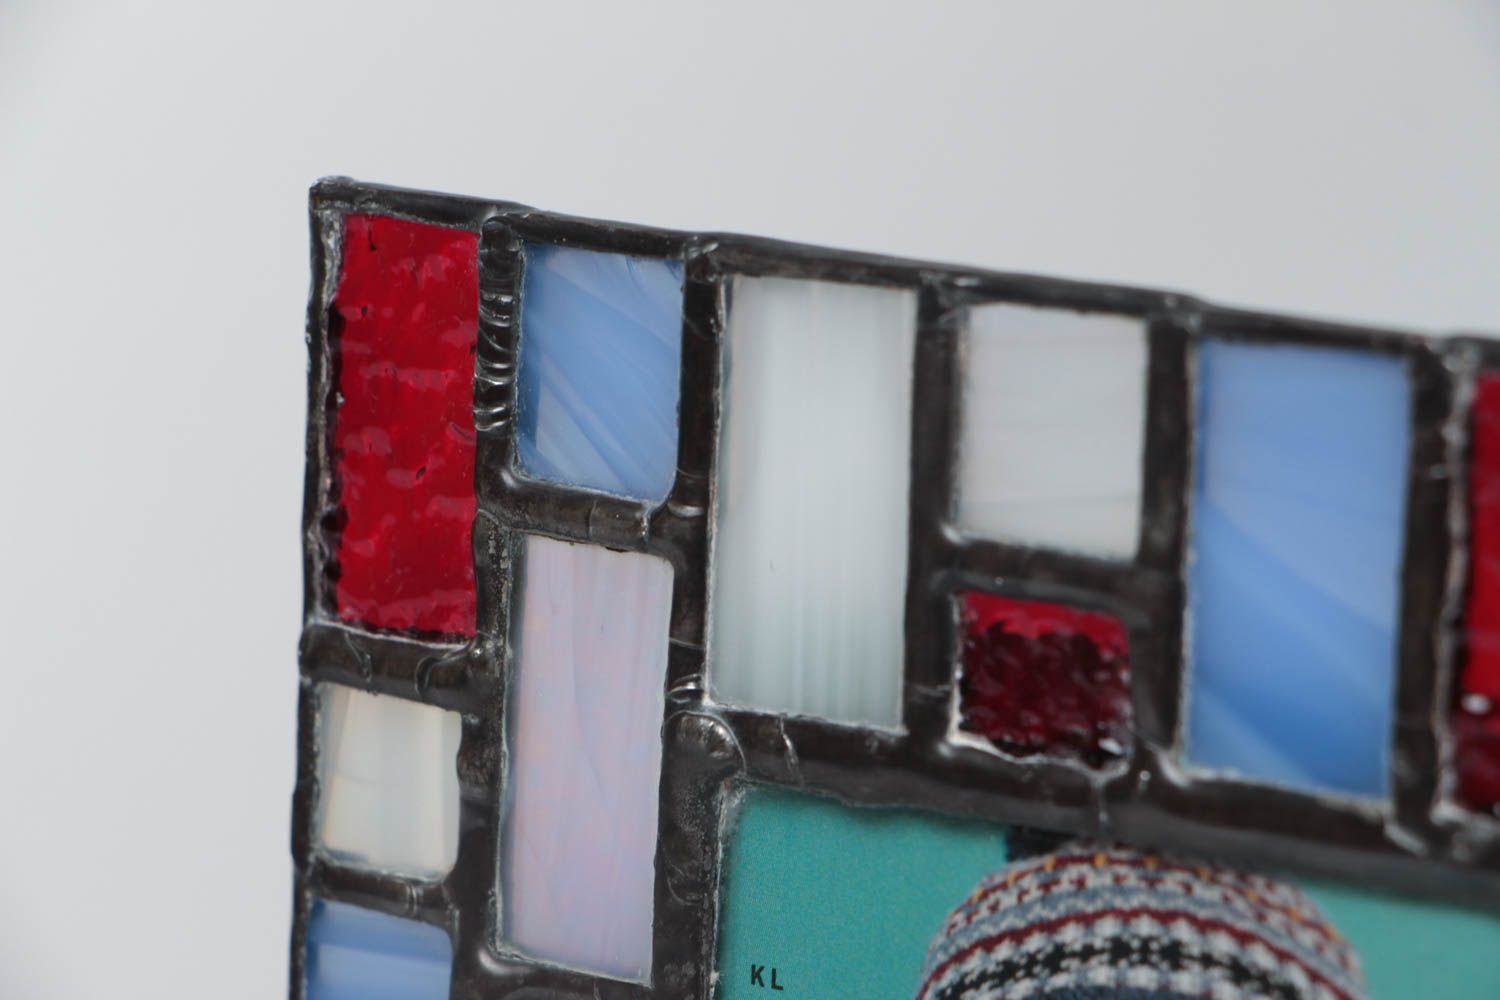 Рамка для фотографий из цветного стекла в витражной технике ручной работы голубая с красным фото 3